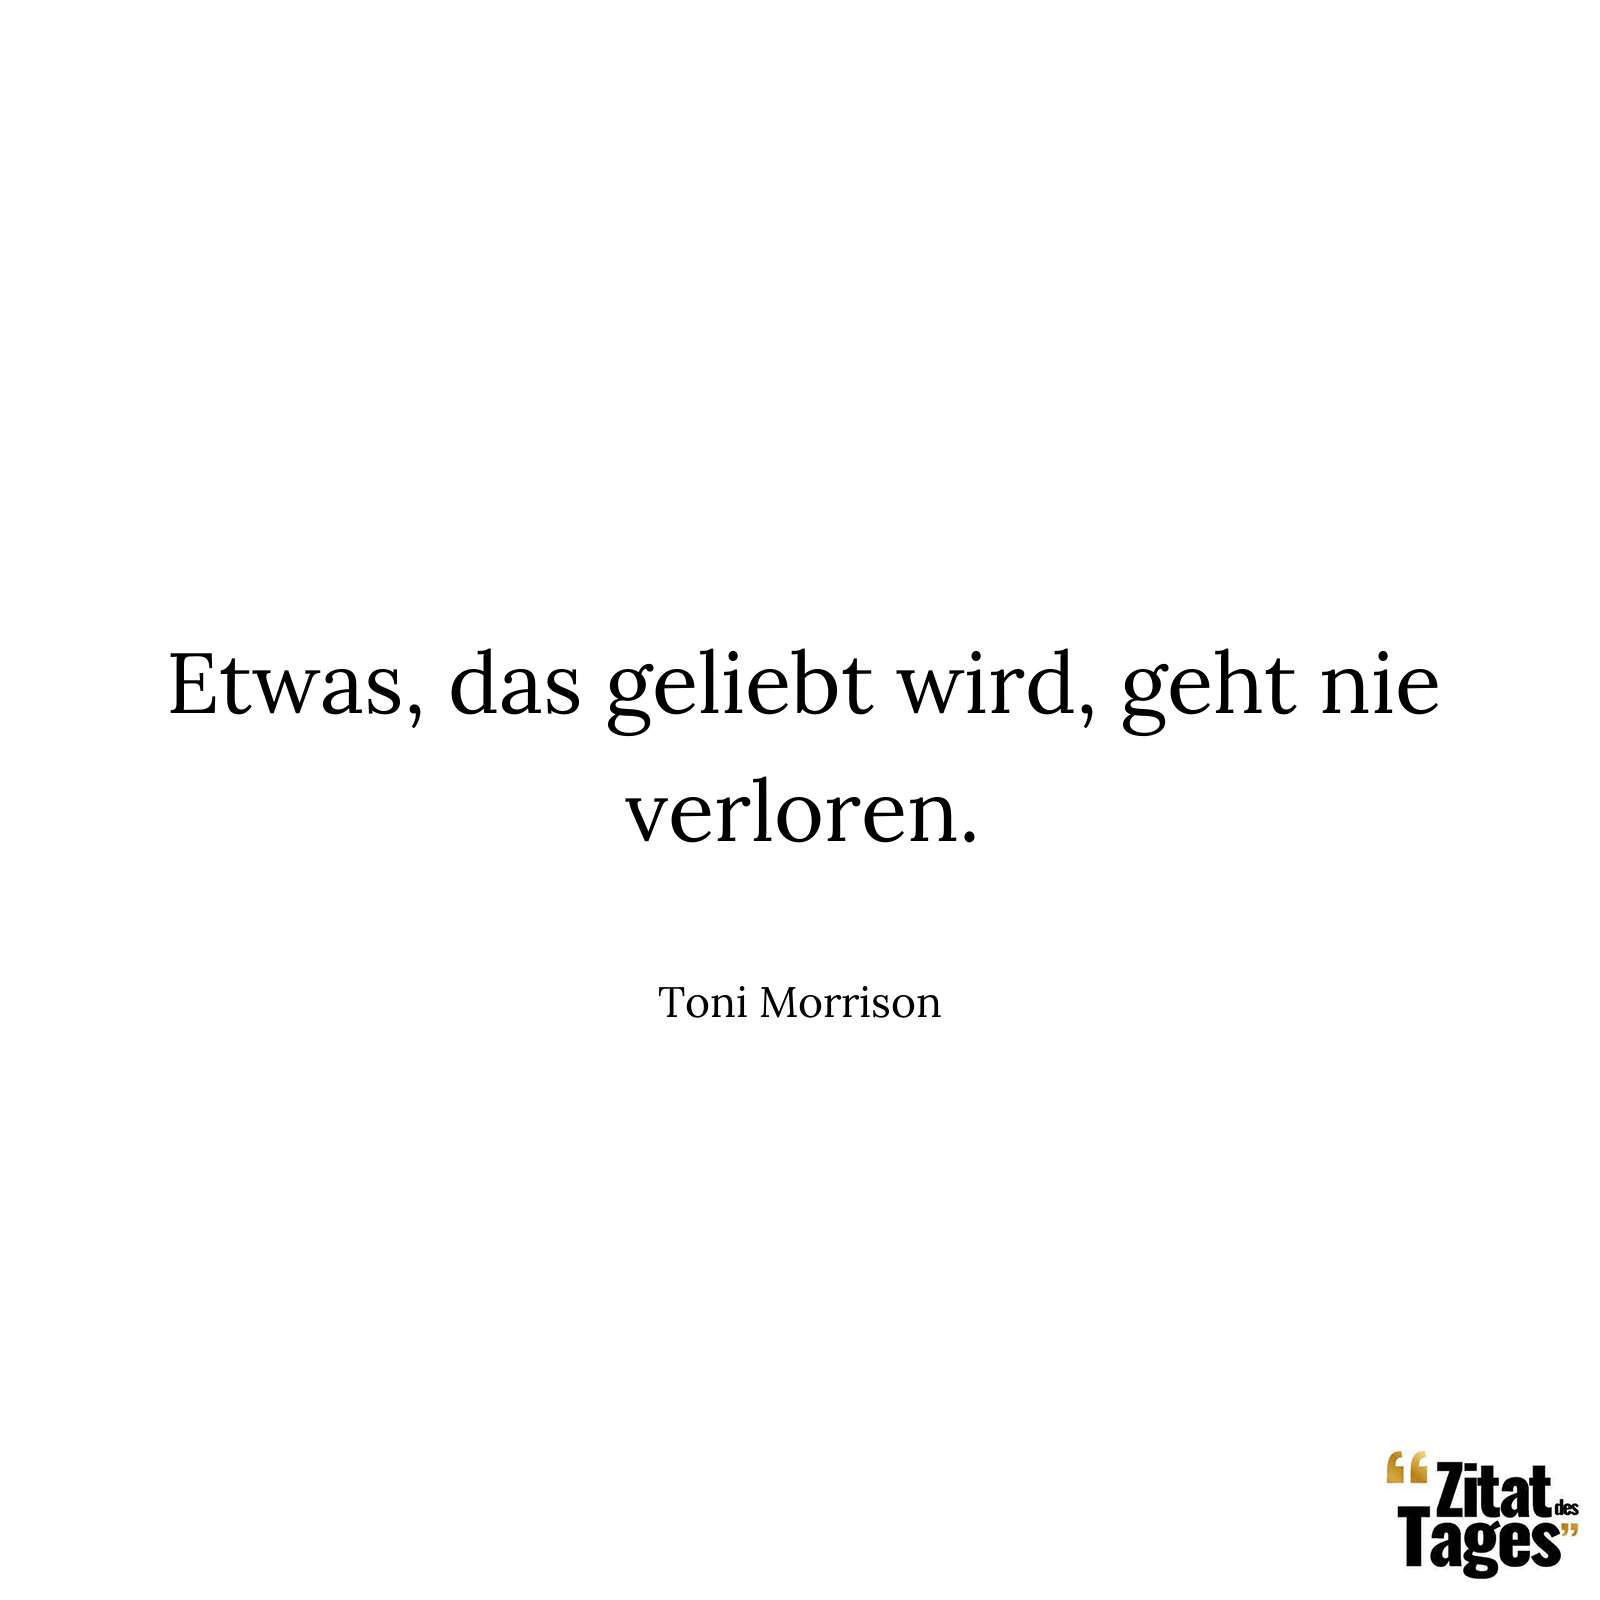 Etwas, das geliebt wird, geht nie verloren. - Toni Morrison